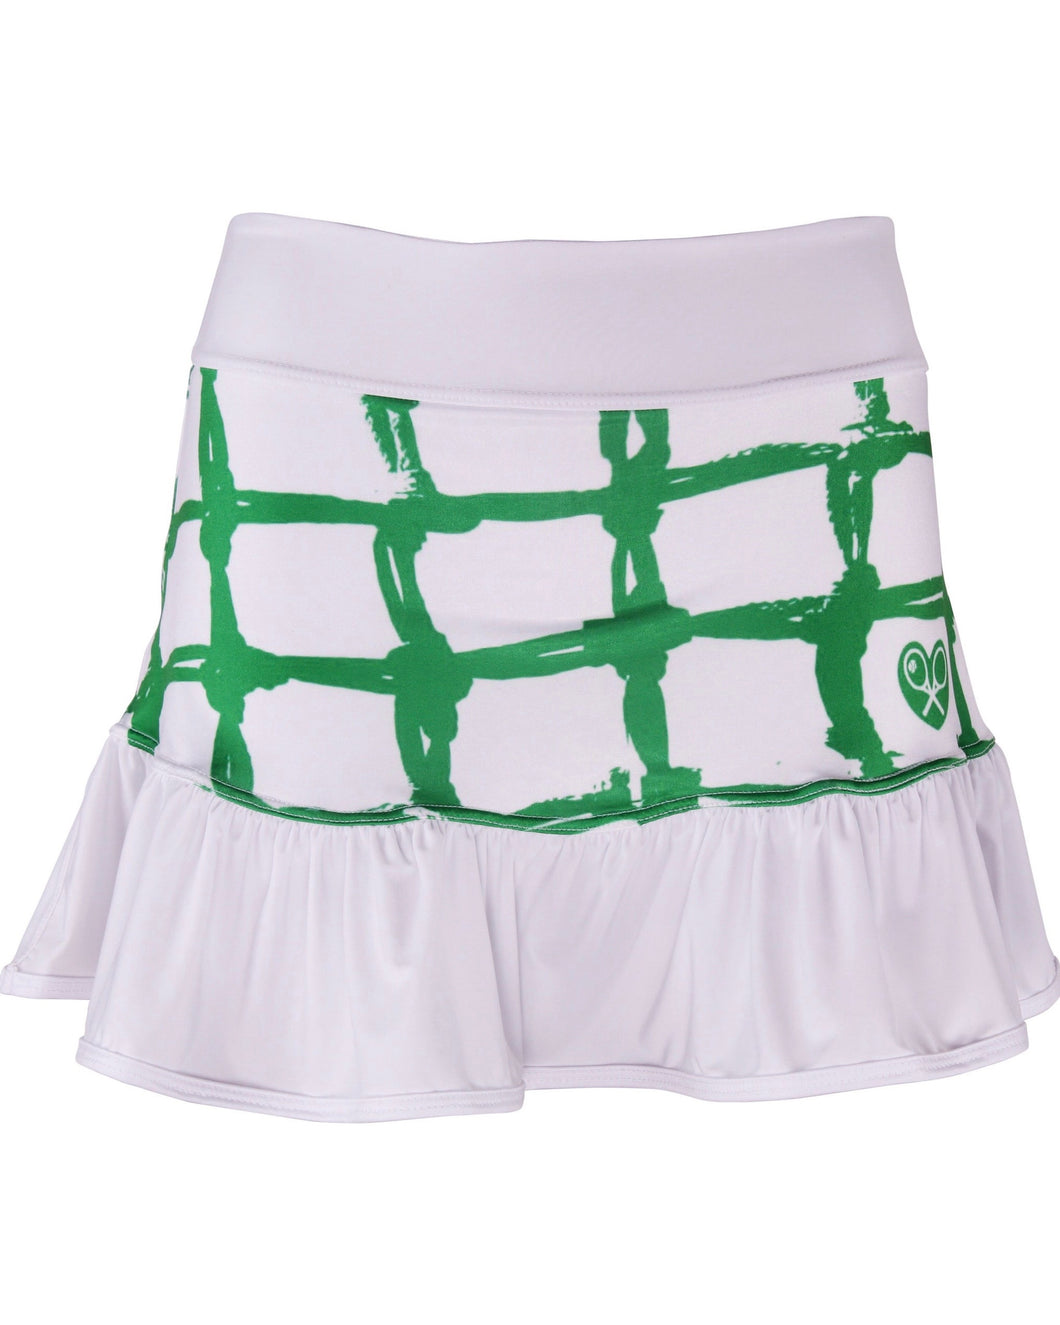 Green Tennis Net on White Ruffle Skirt - I LOVE MY DOUBLES PARTNER!!!